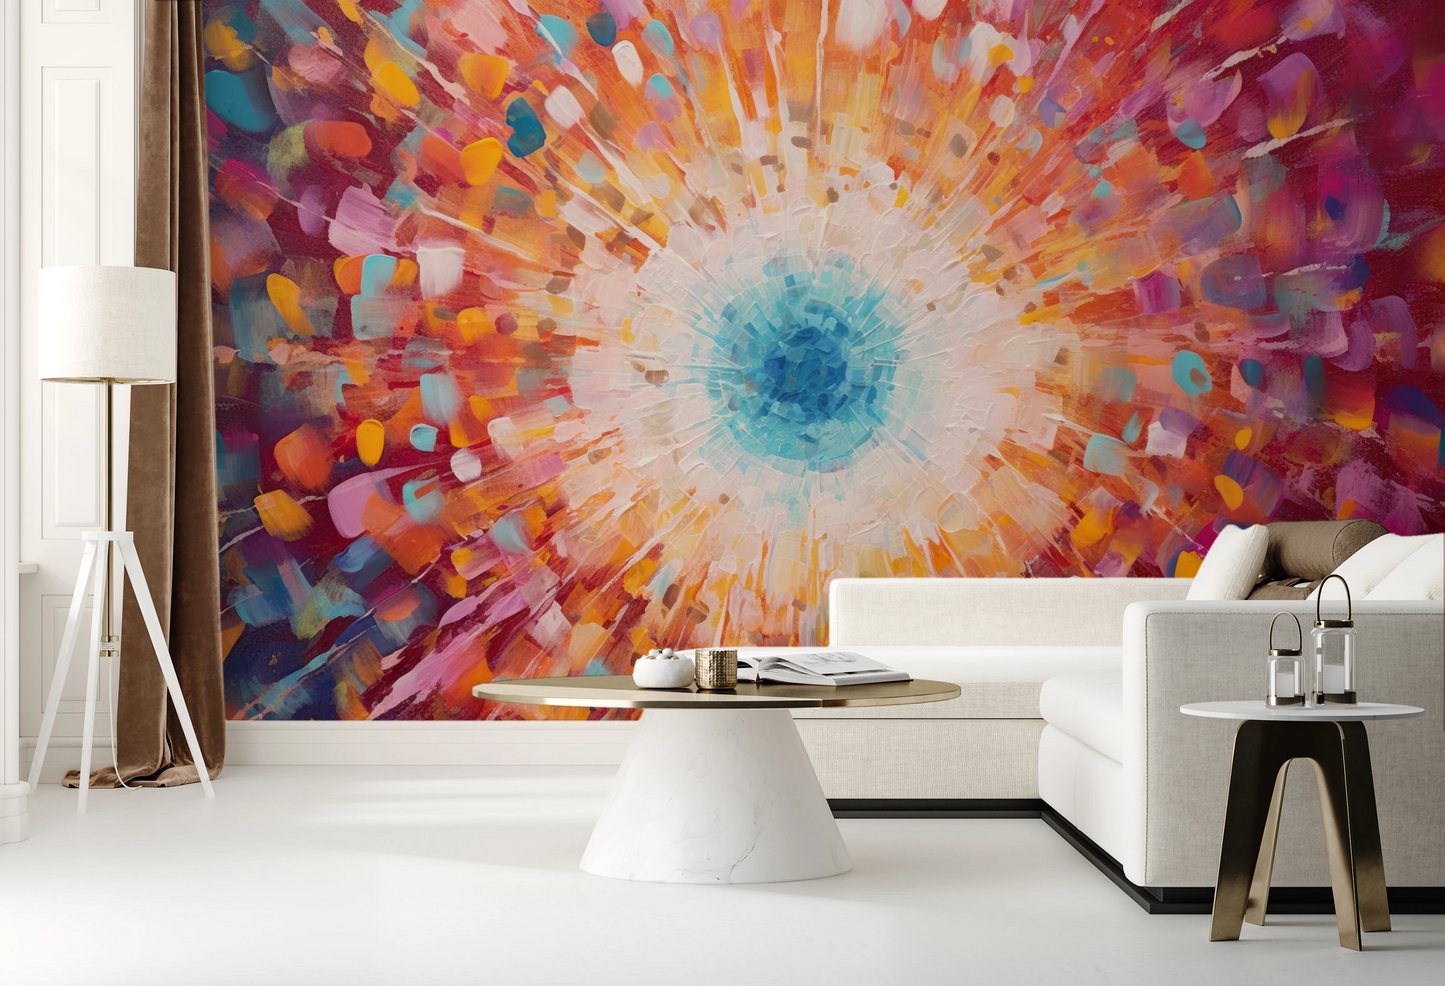 Wzór fototapety artystycznej o nazwie Vibrant Mosaic pokazanej w aranżacji wnętrza.